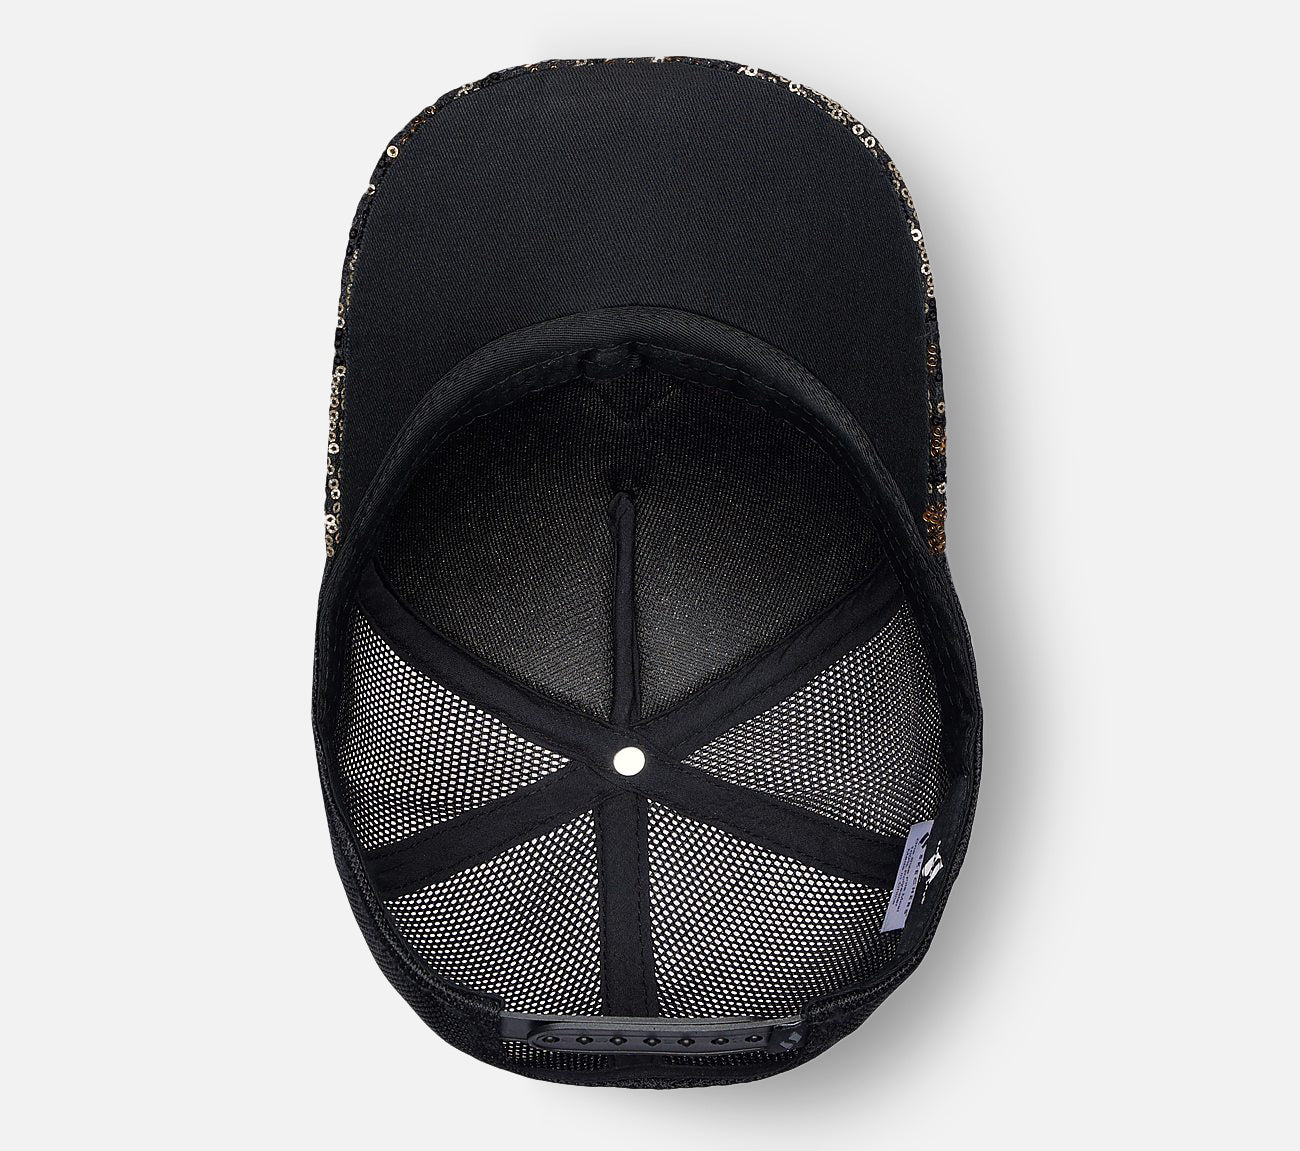 Skech-Shine Cheetah Adjustable Trucker Hat Hat Skechers